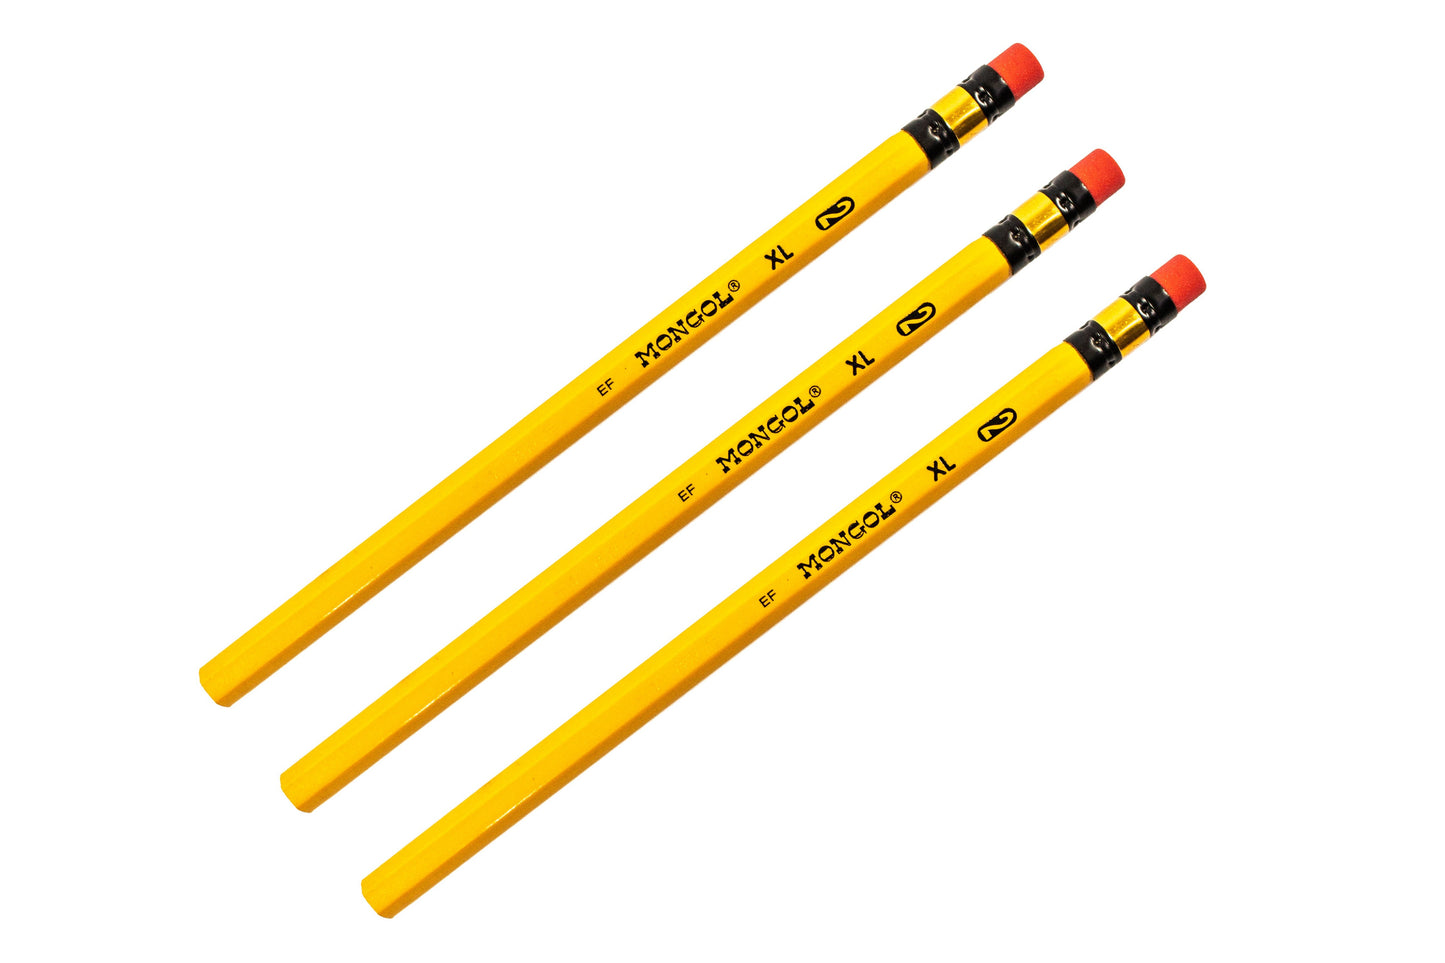 Mongol Pencil No.2 XL 12pcs